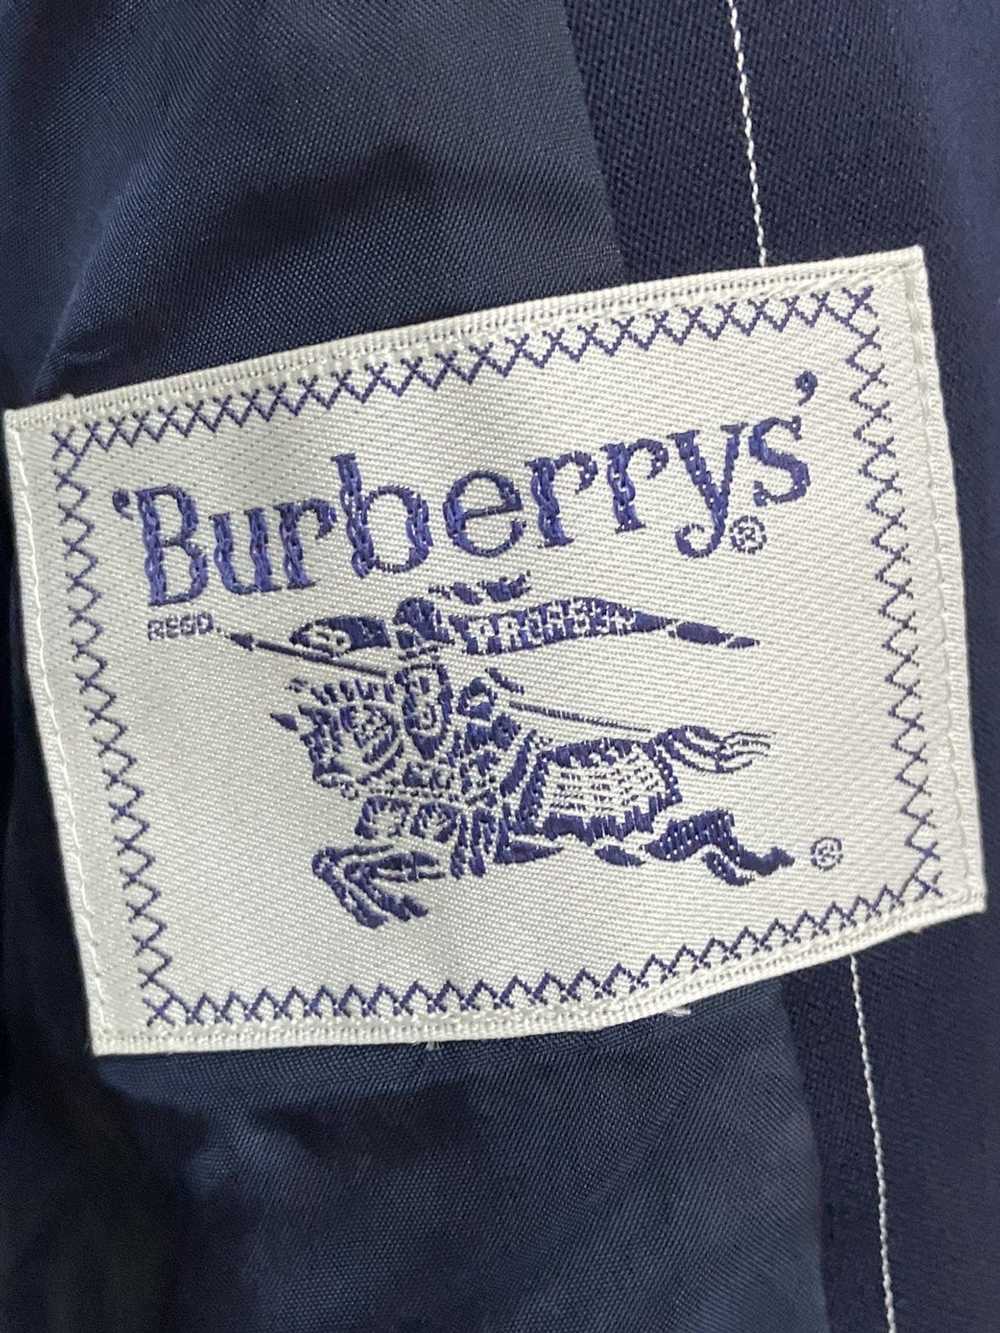 Burberry × Luxury Burberrys Striped Blazer Size 38 - image 4